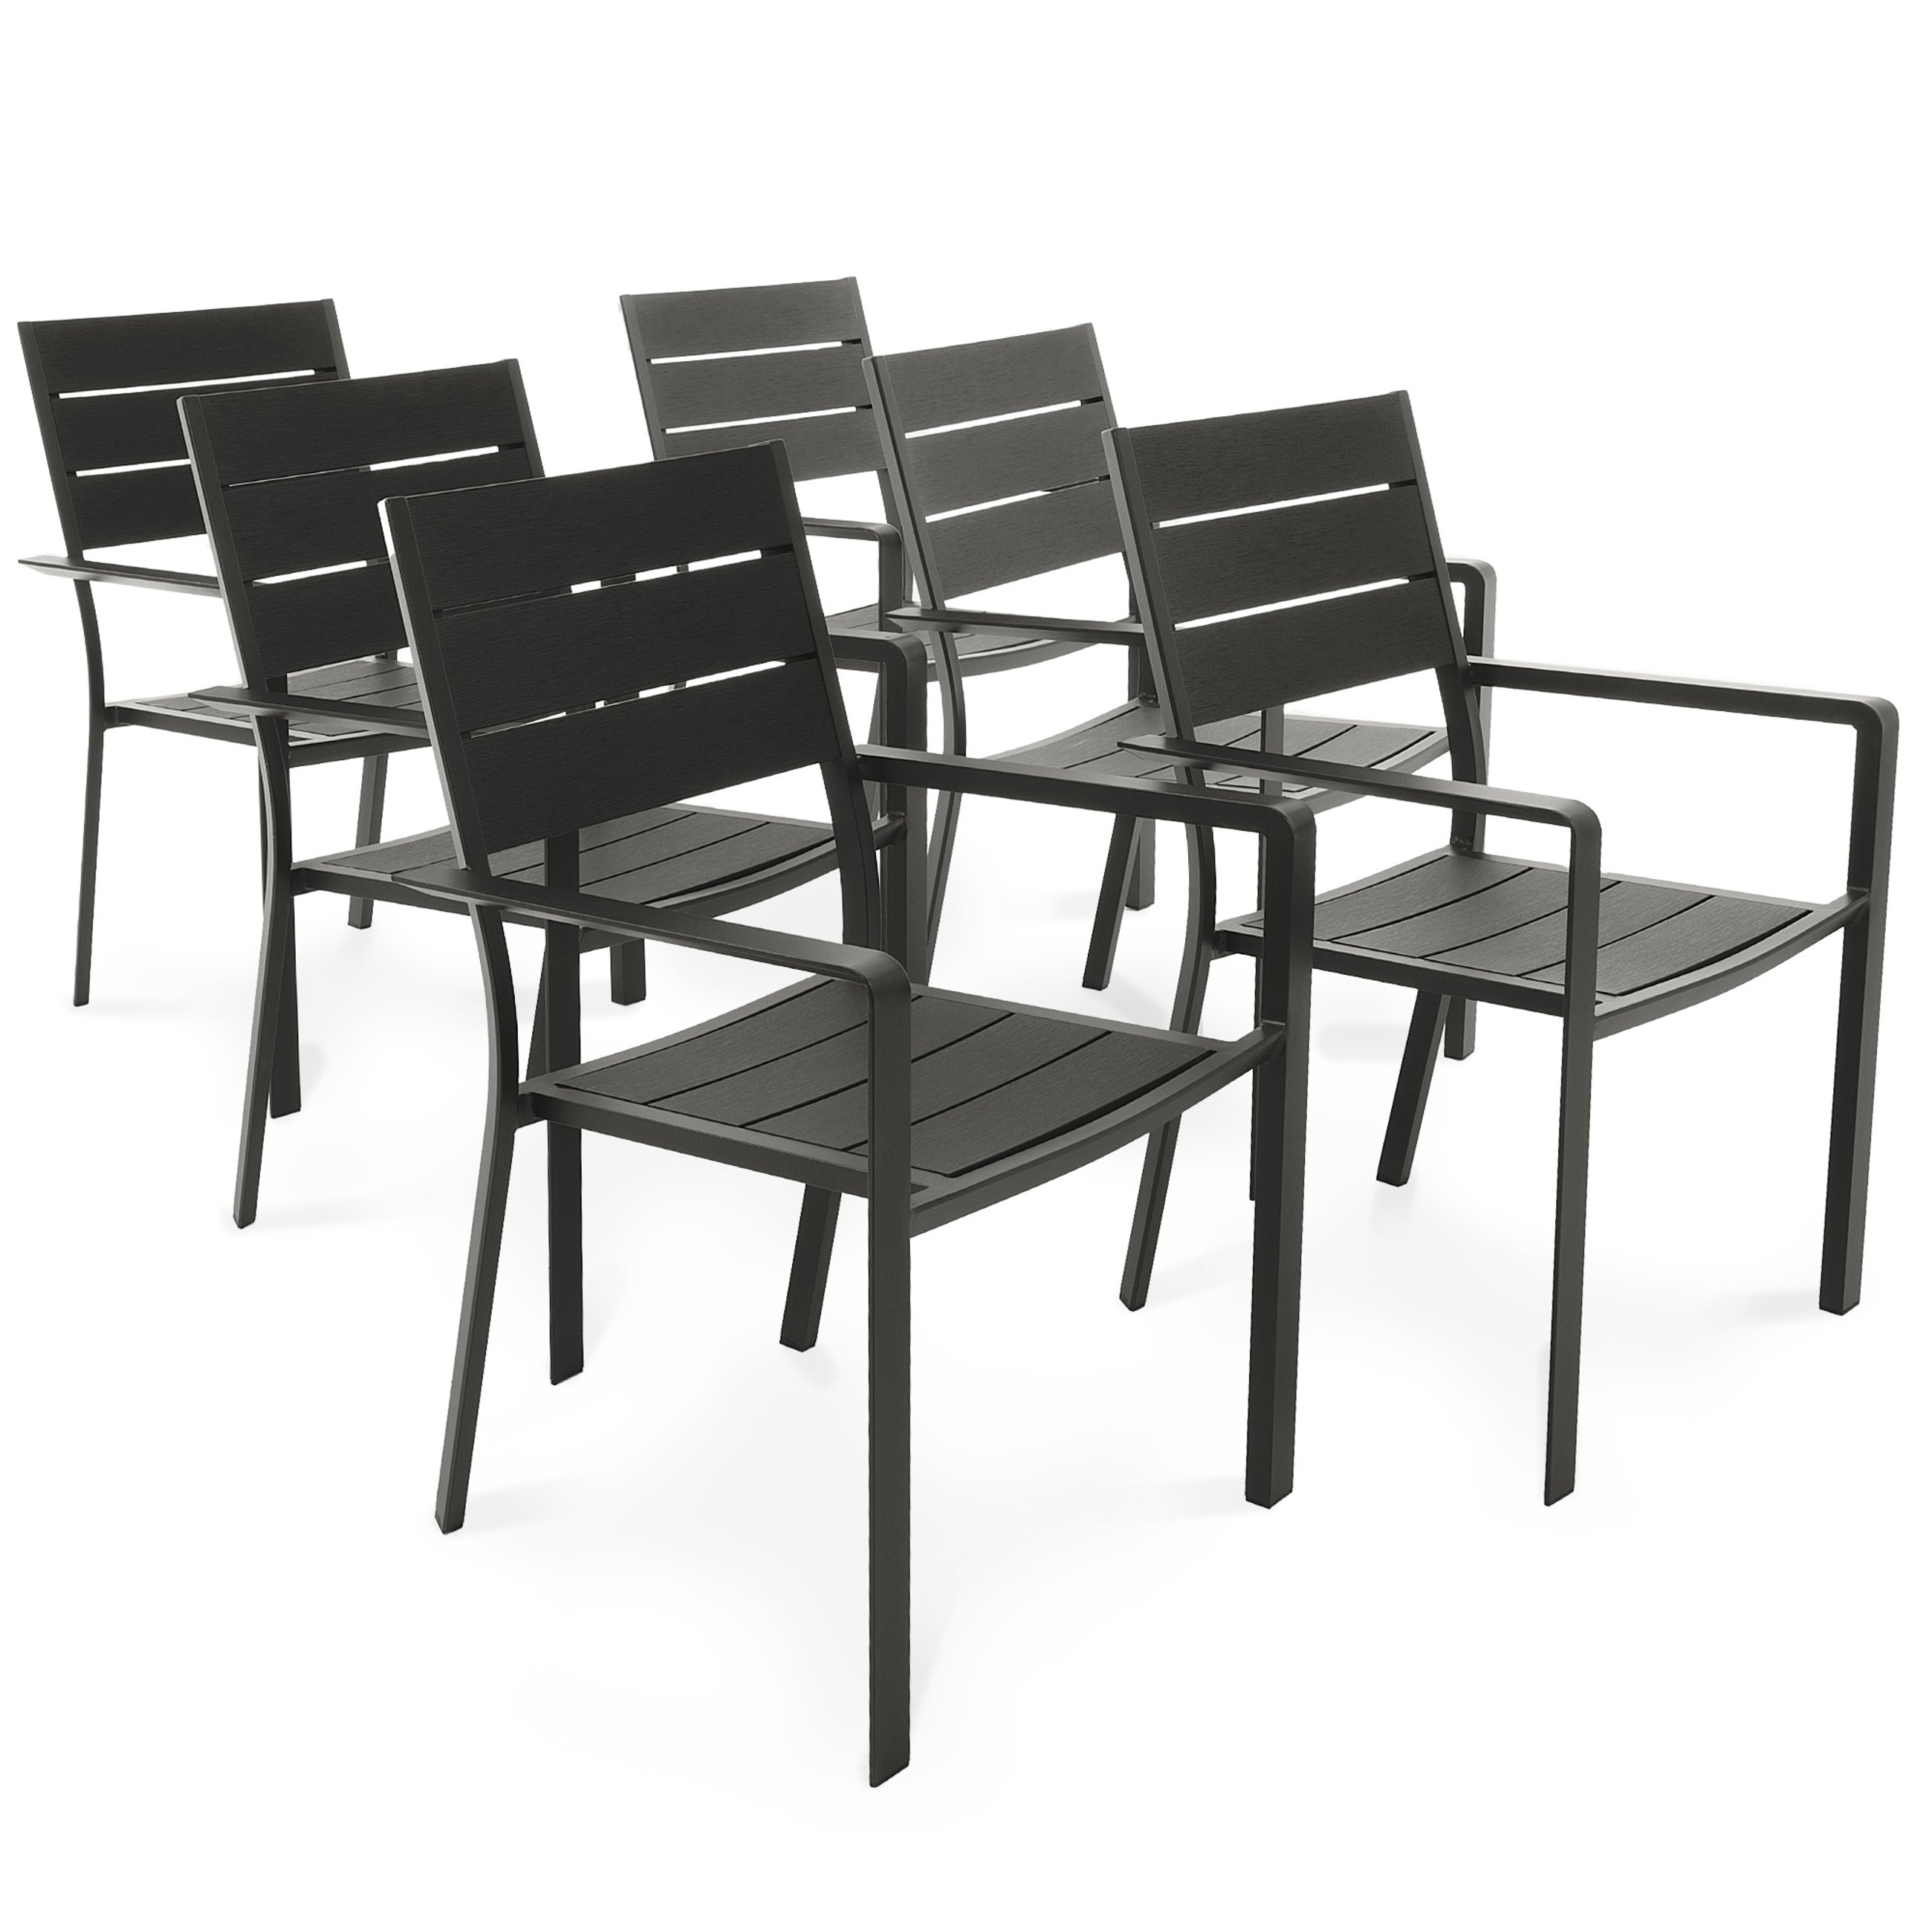 Zestaw 6 krzeseł ogrodowych Teri marki di volio to meble, które łączą nowoczesną estetykę, wygodę użytkowania i trwałość